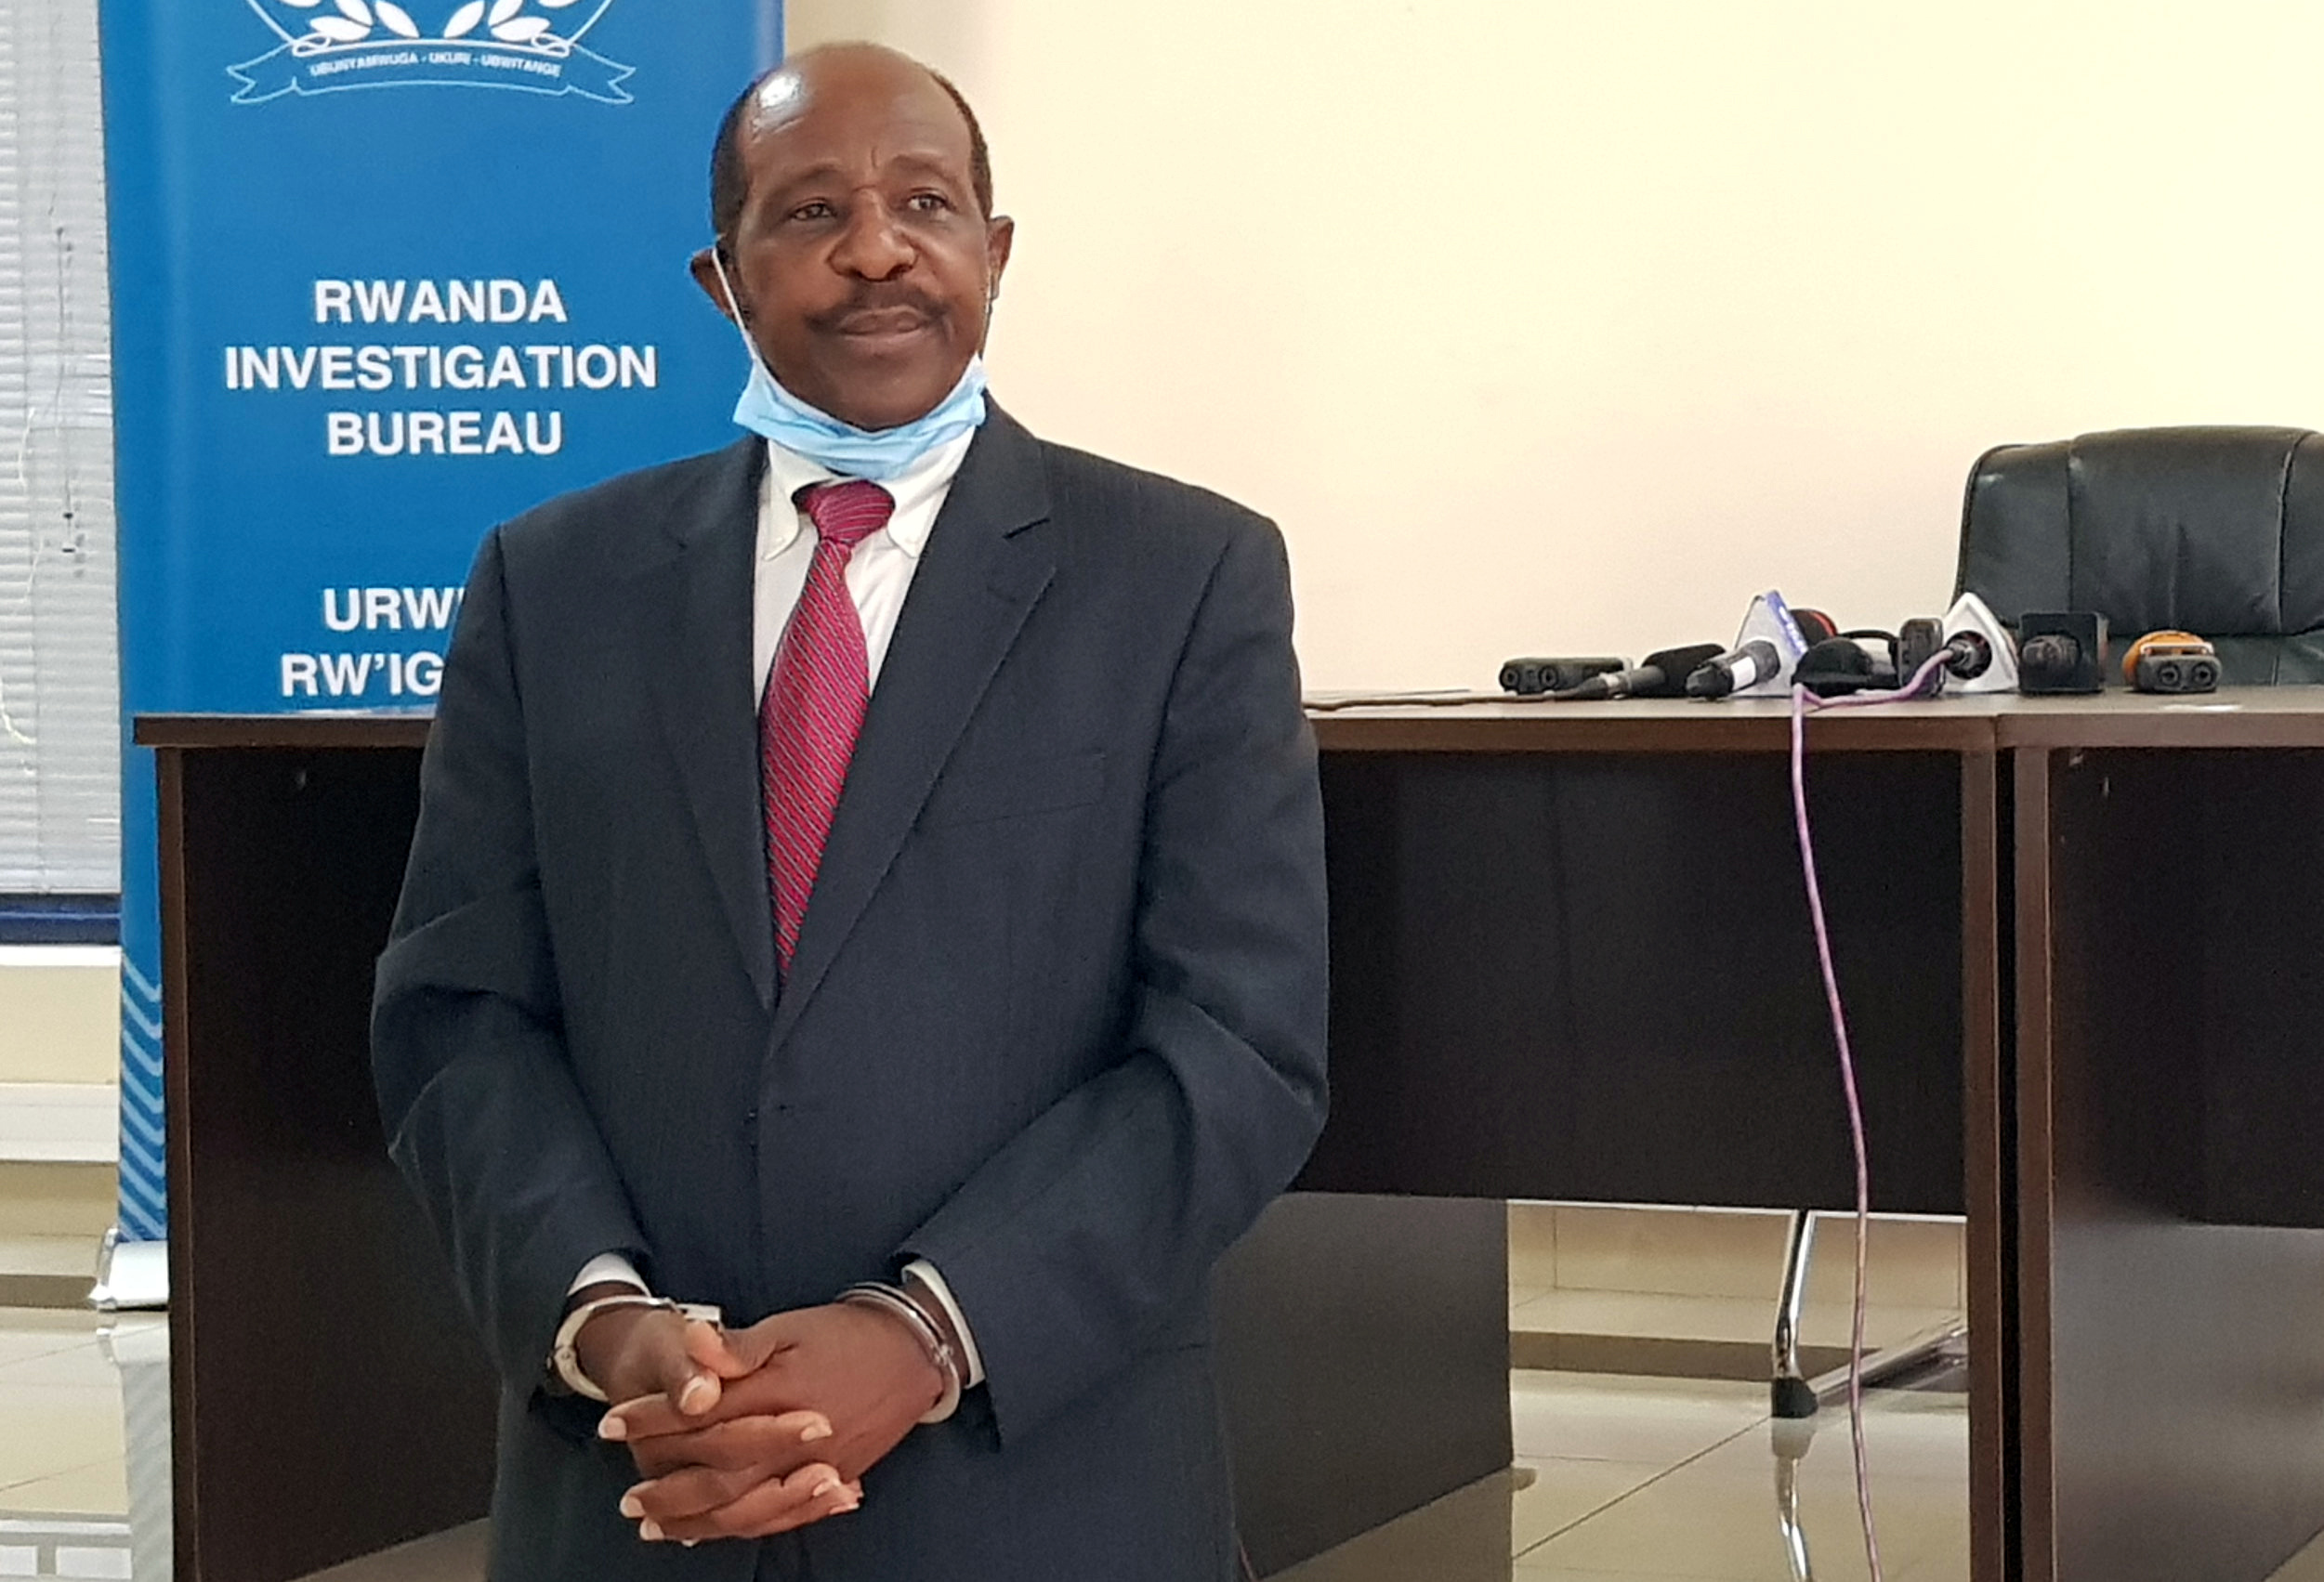 L'inspirateur du film "Hotel Rwanda" arrêté à Kigali pour terrorisme